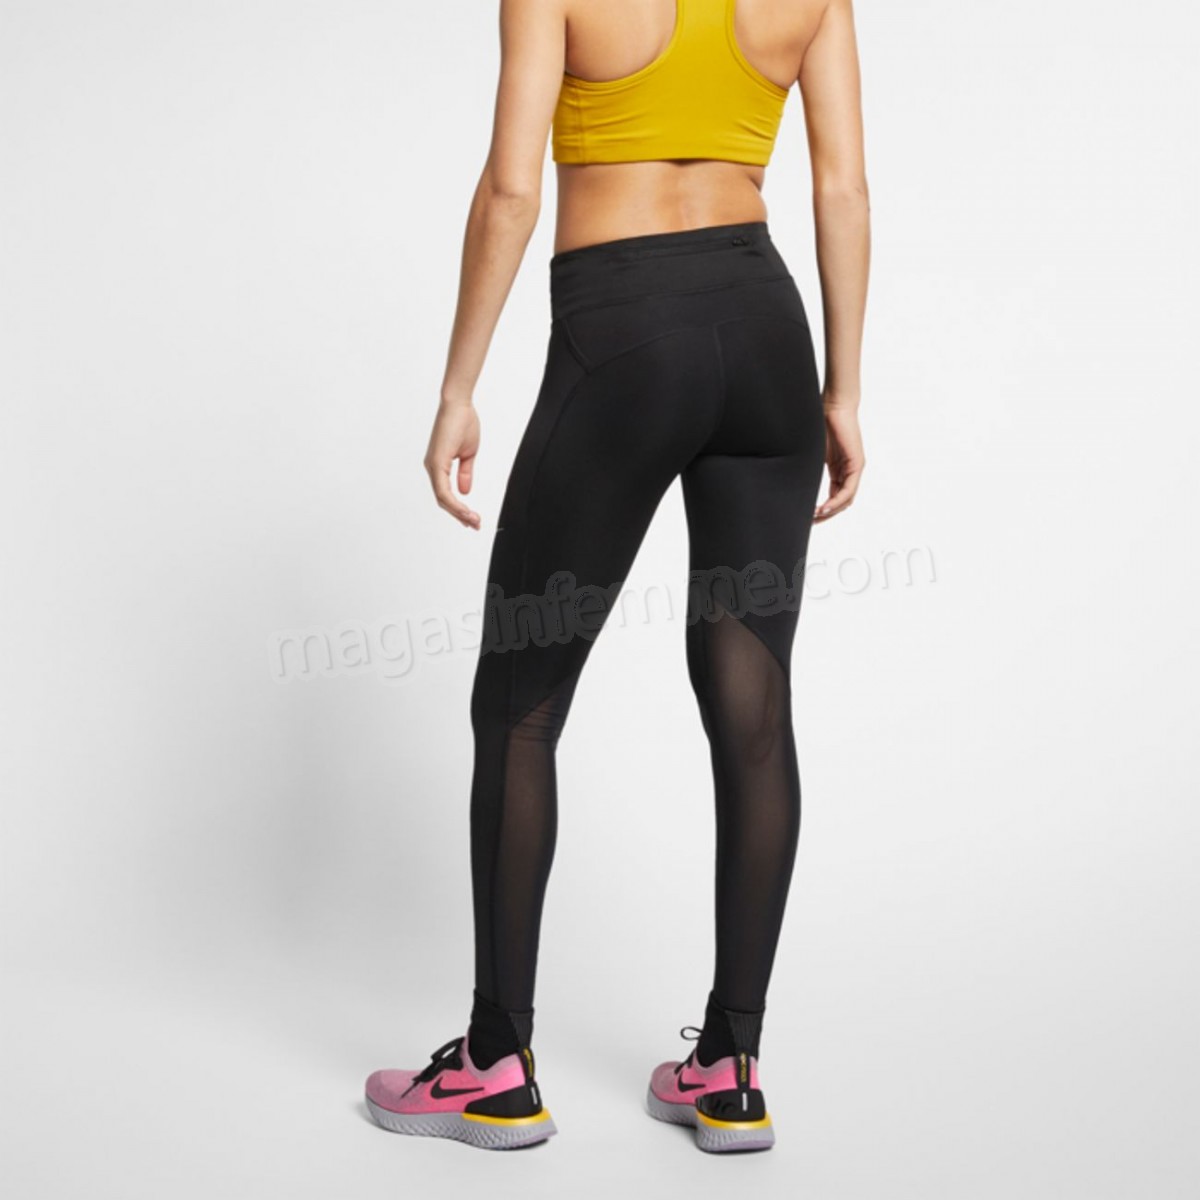 Nike-COLLANT running femme NIKE FAST TGHT en solde - -2